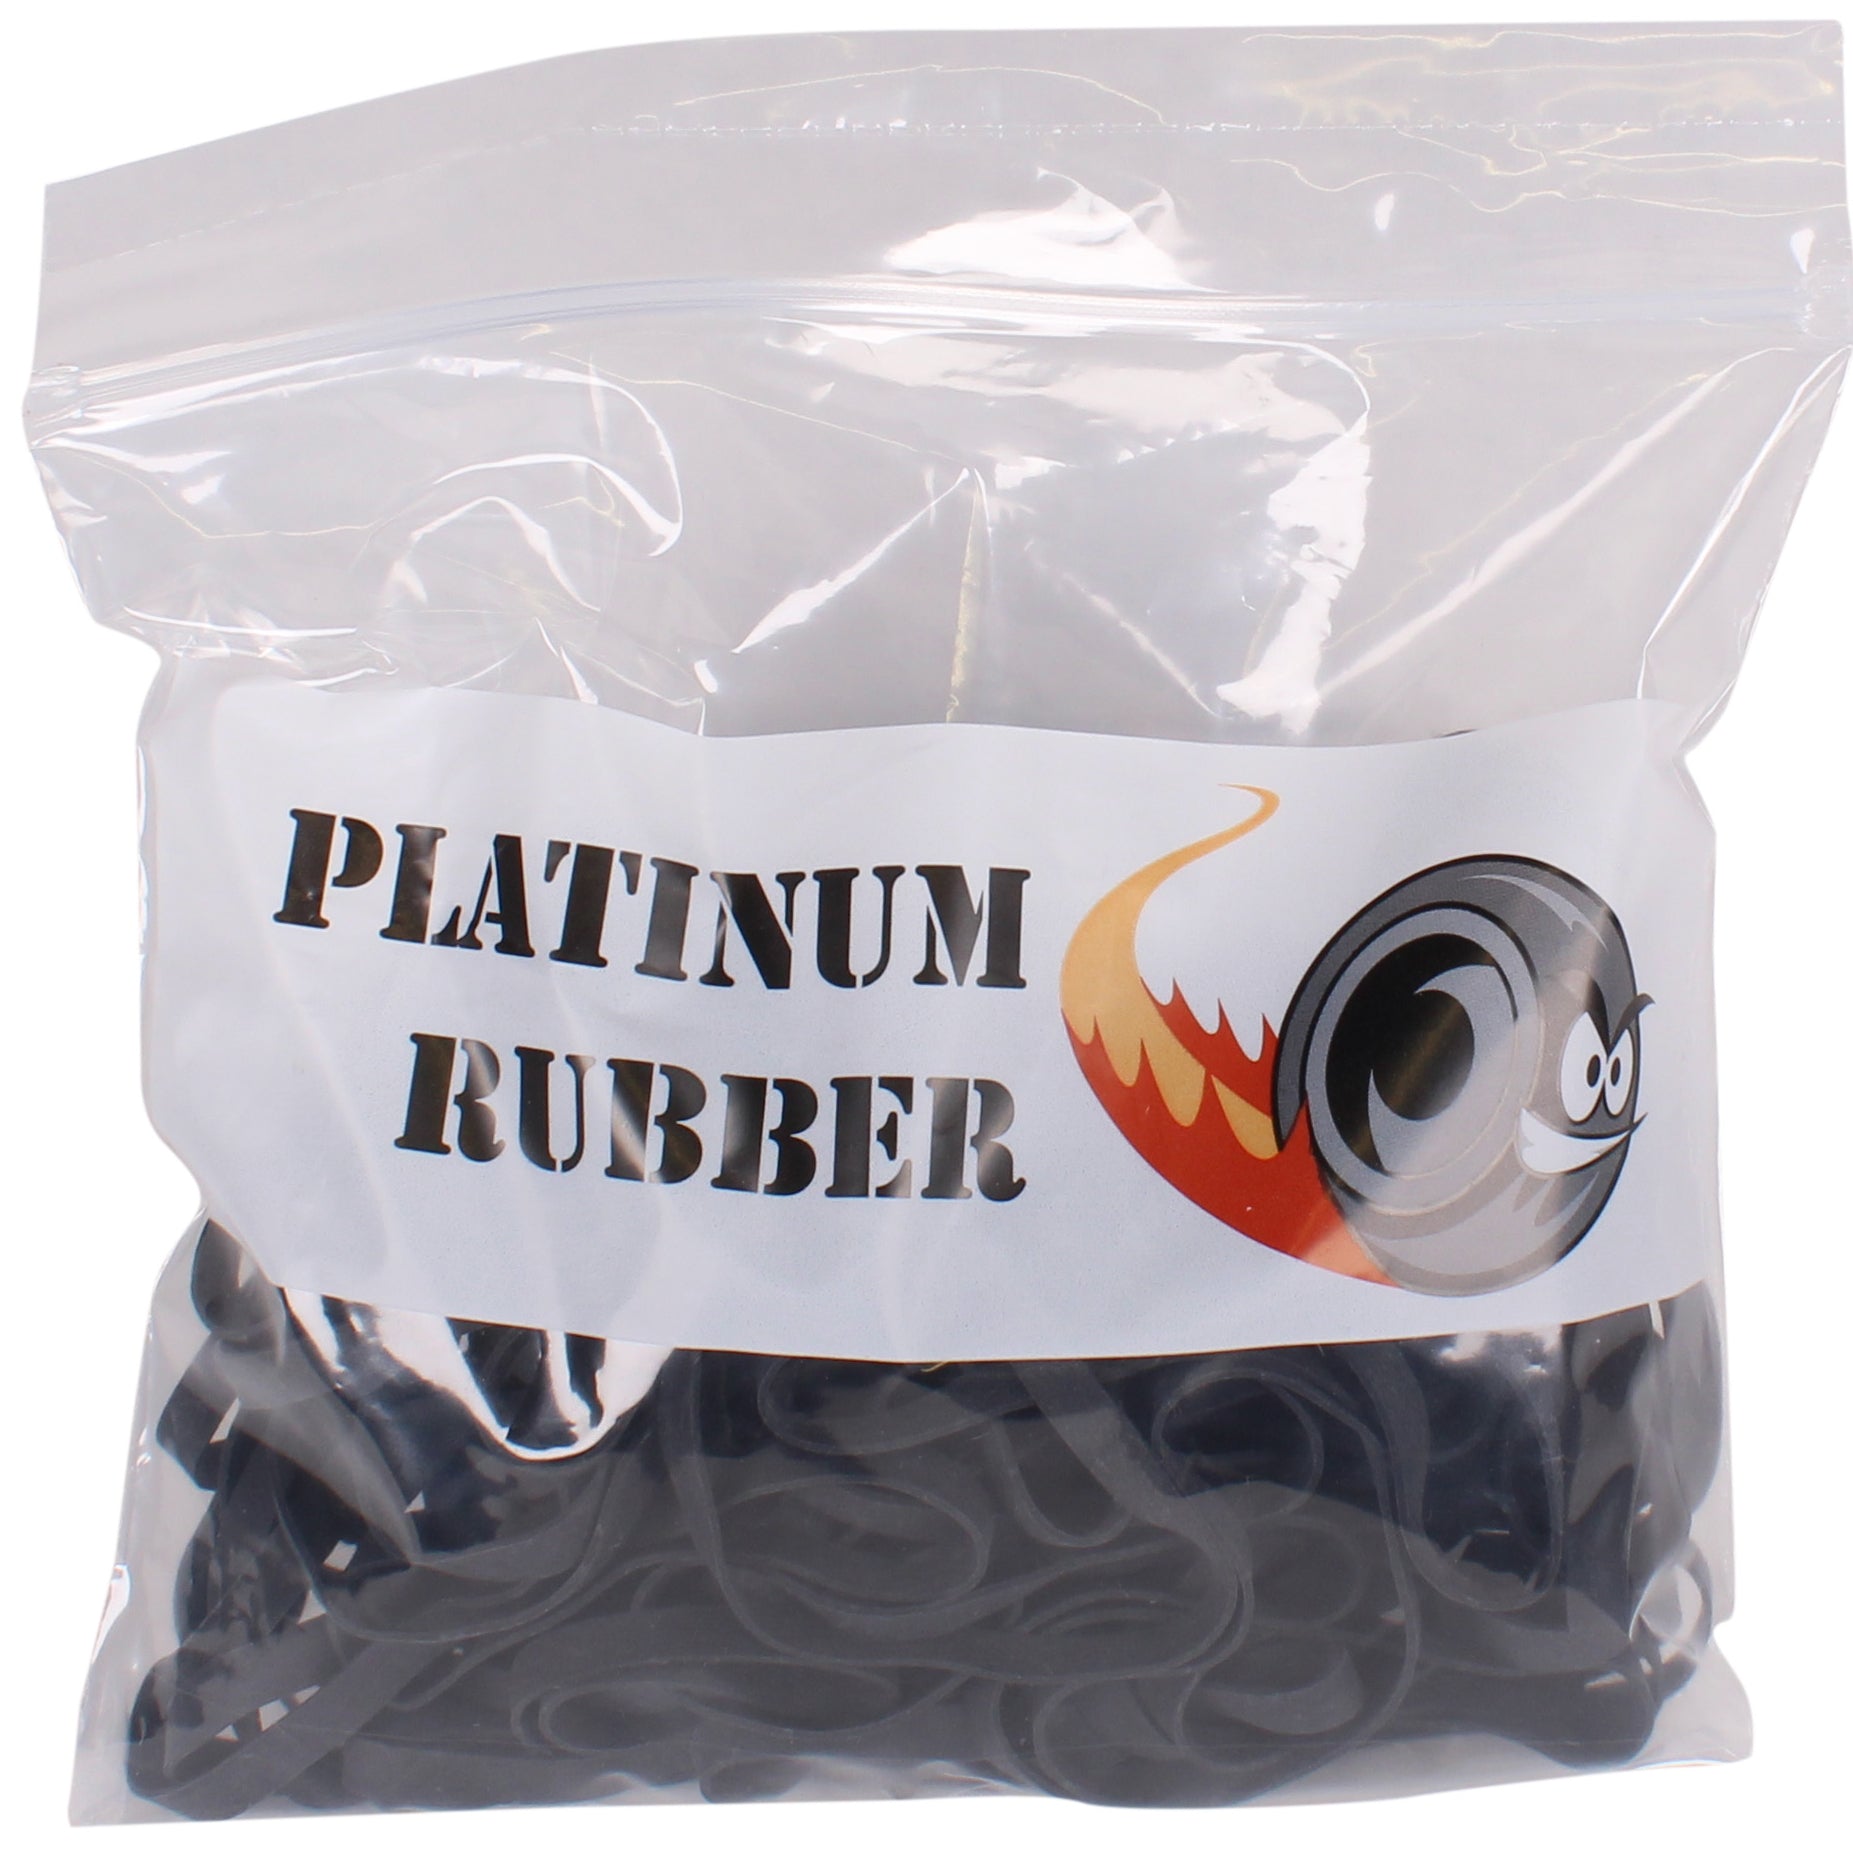 64 Black Rubber Bands (3.5 x 1/4) – Platinum Rubber